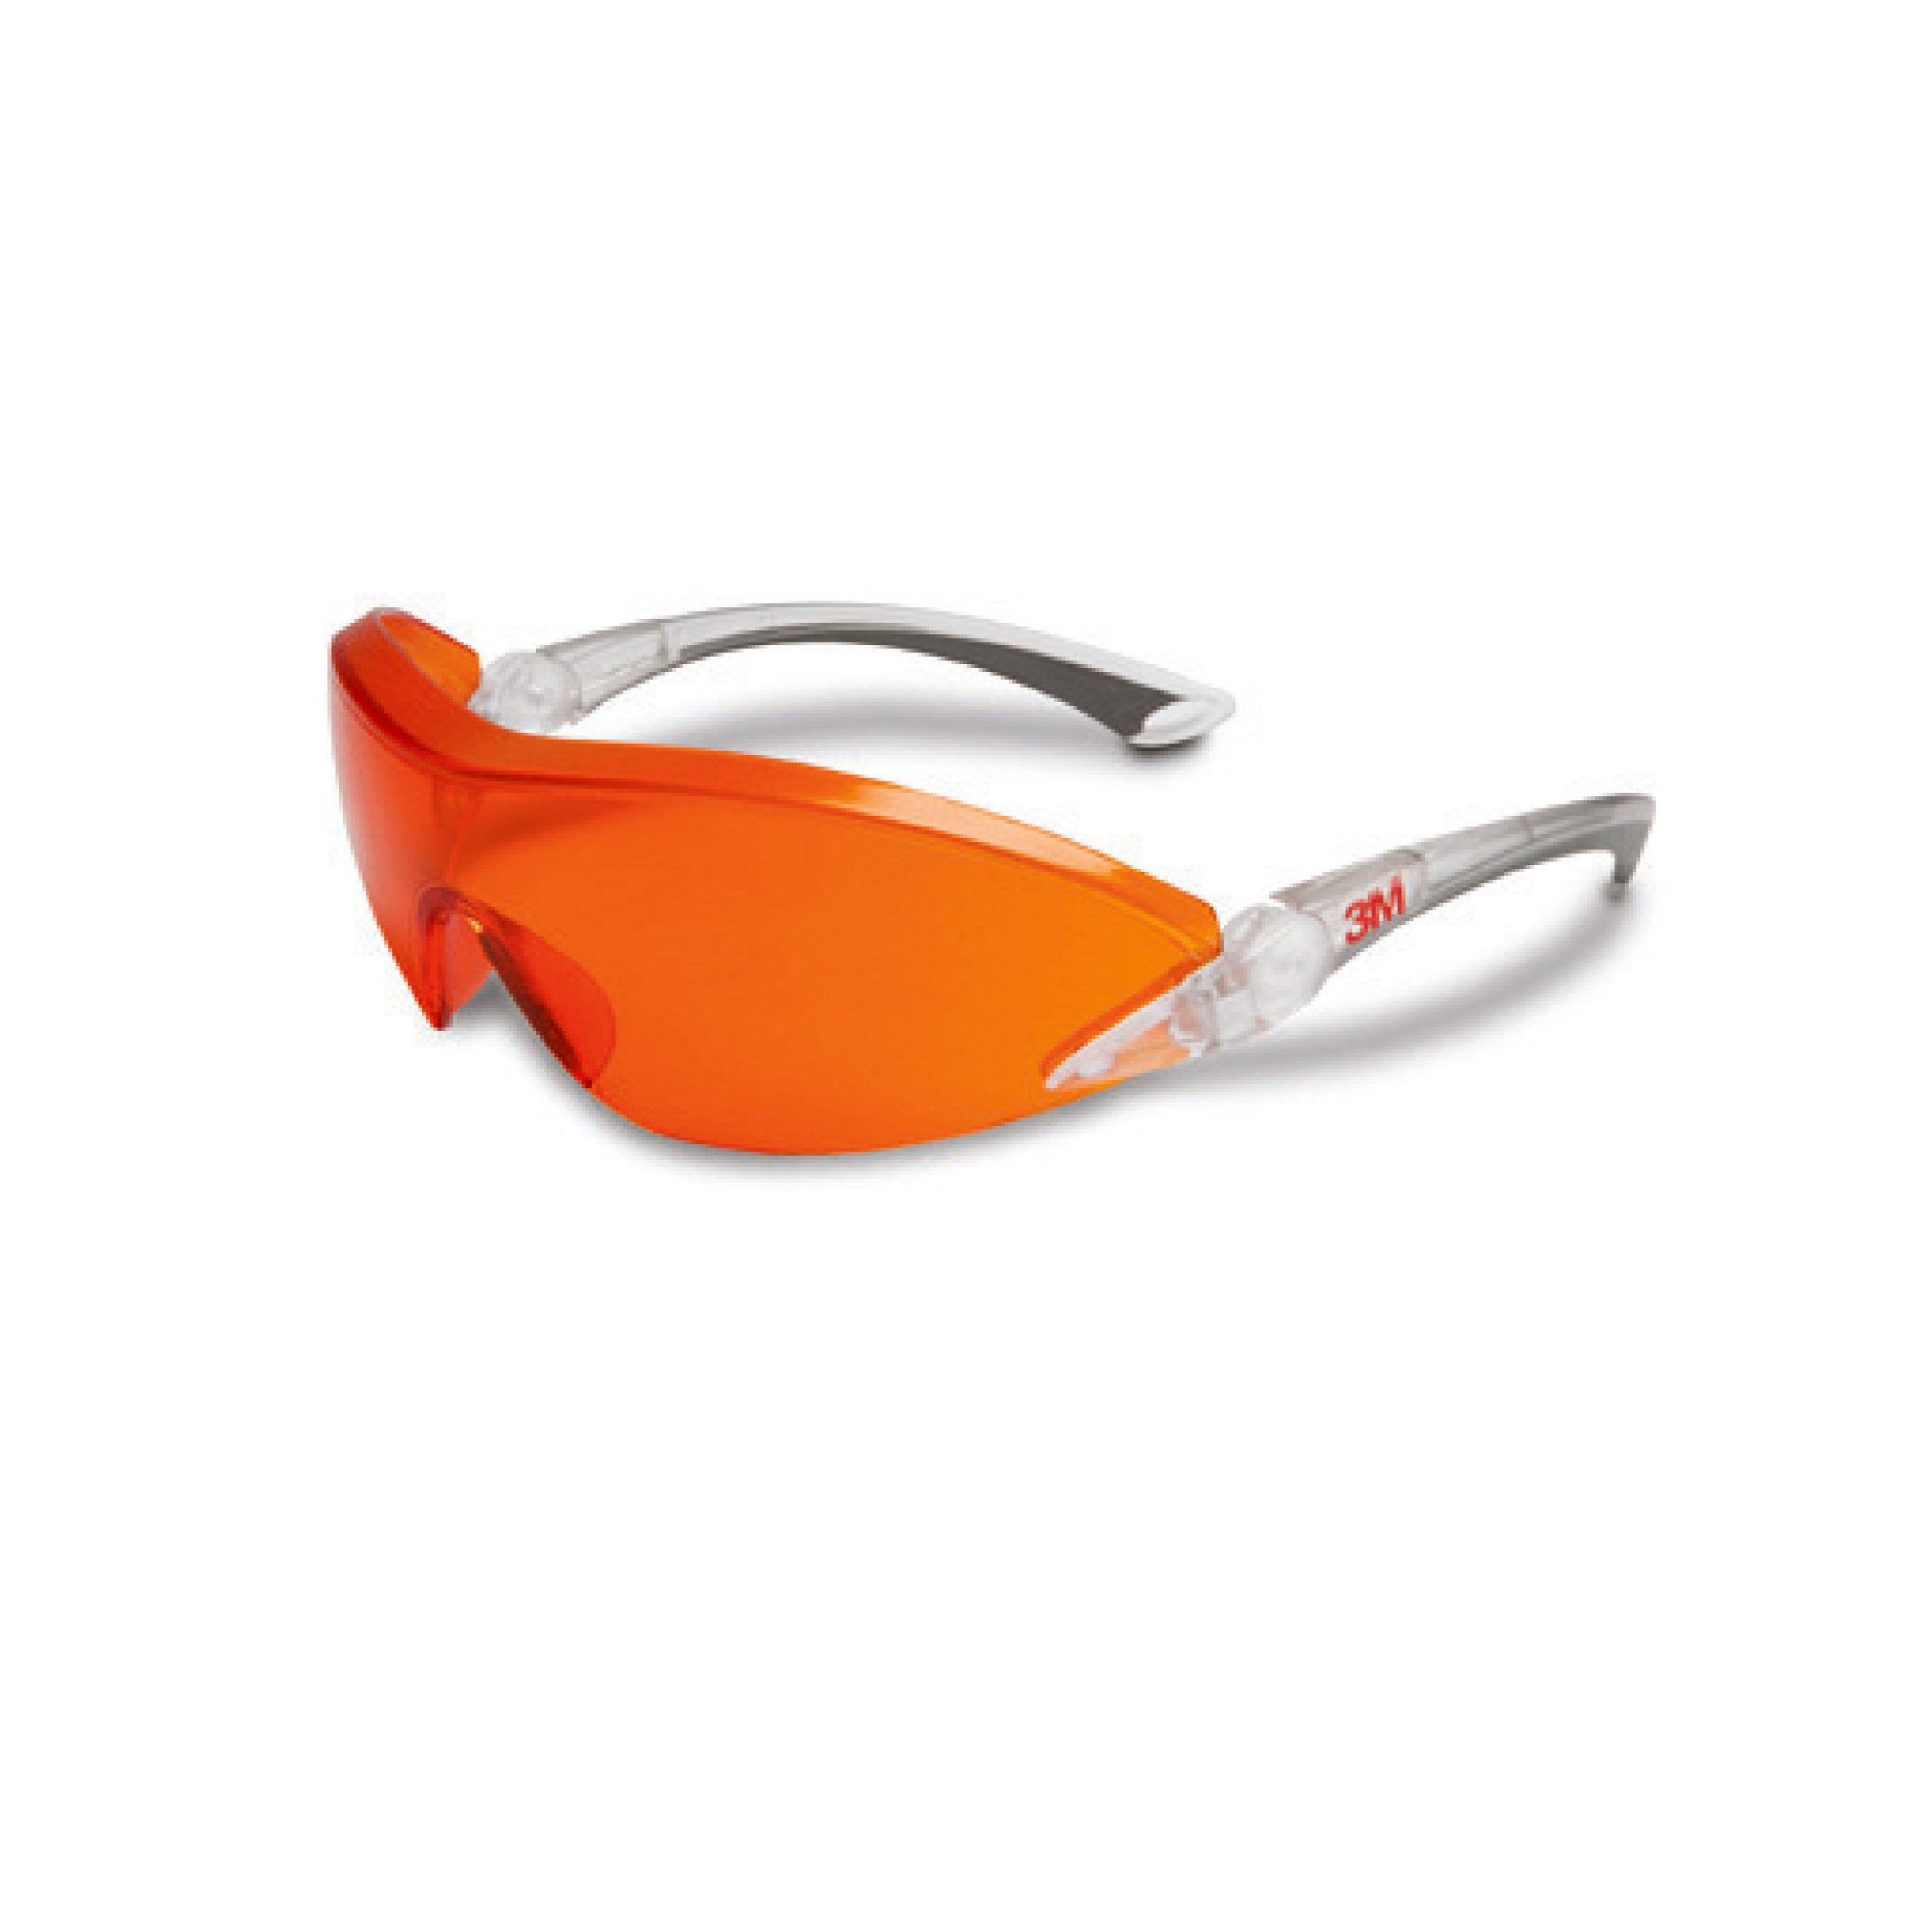 3M 2846 Schutzbrille rot-orange